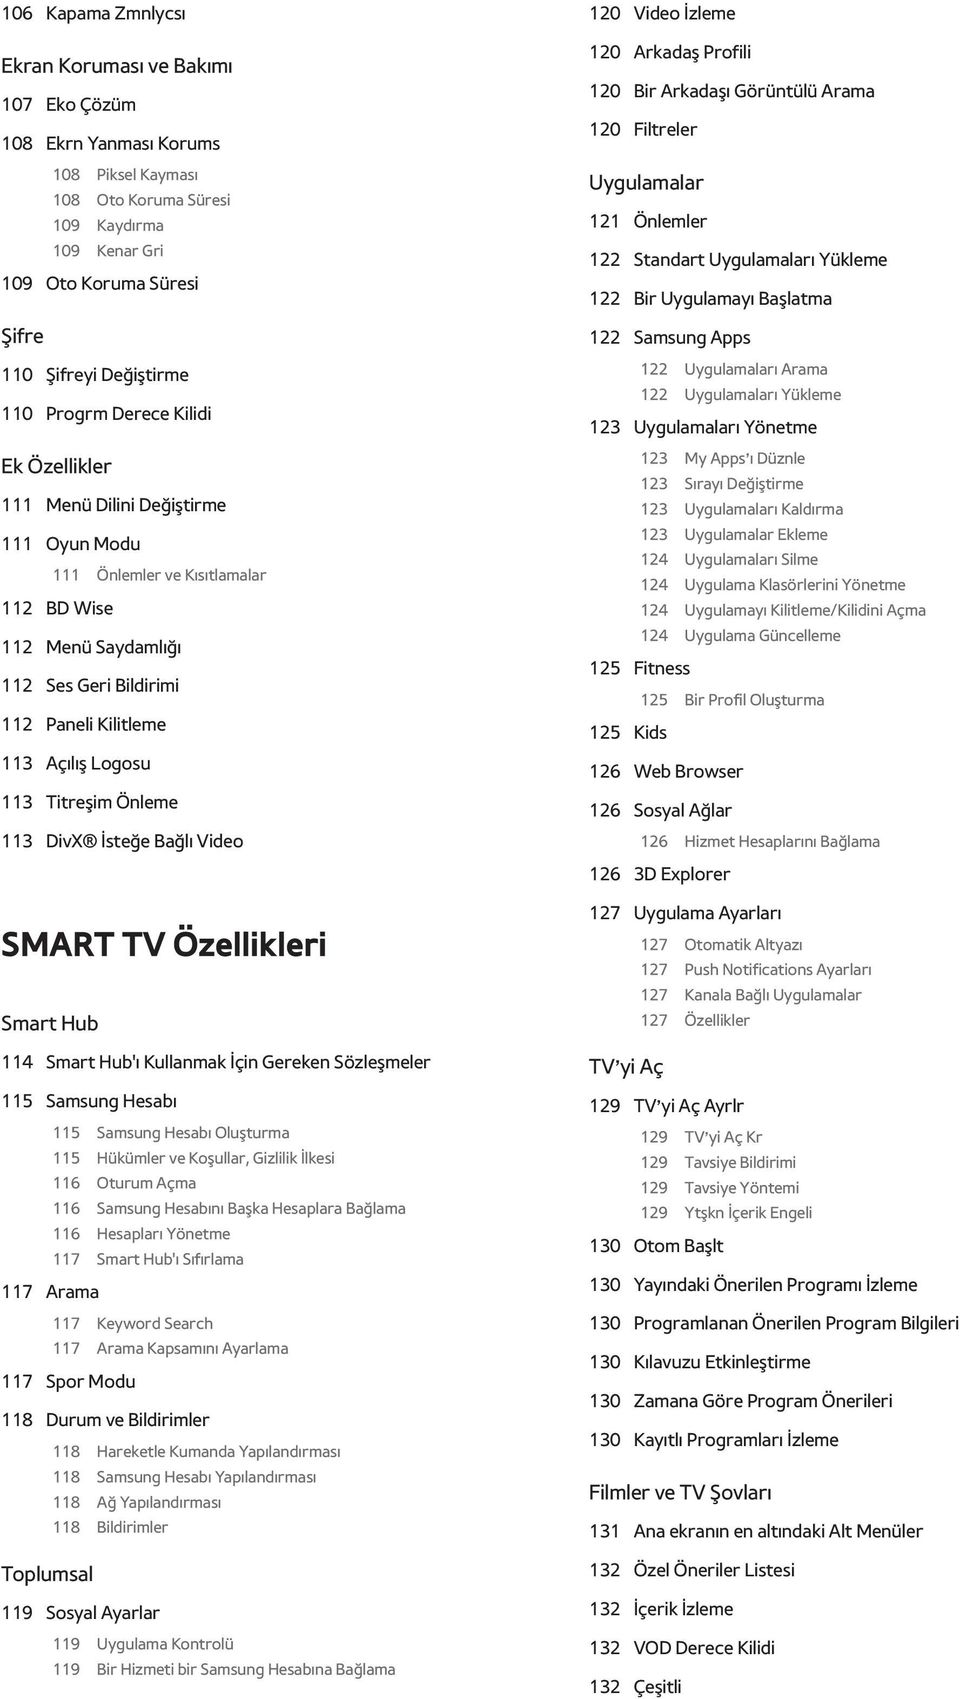 Açılış Logosu 113 Titreşim Önleme 113 DivX İsteğe Bağlı Video SMART TV Özellikleri Smart Hub 114 Smart Hub'ı Kullanmak İçin Gereken Sözleşmeler 115 Samsung Hesabı 115 Samsung Hesabı Oluşturma 115